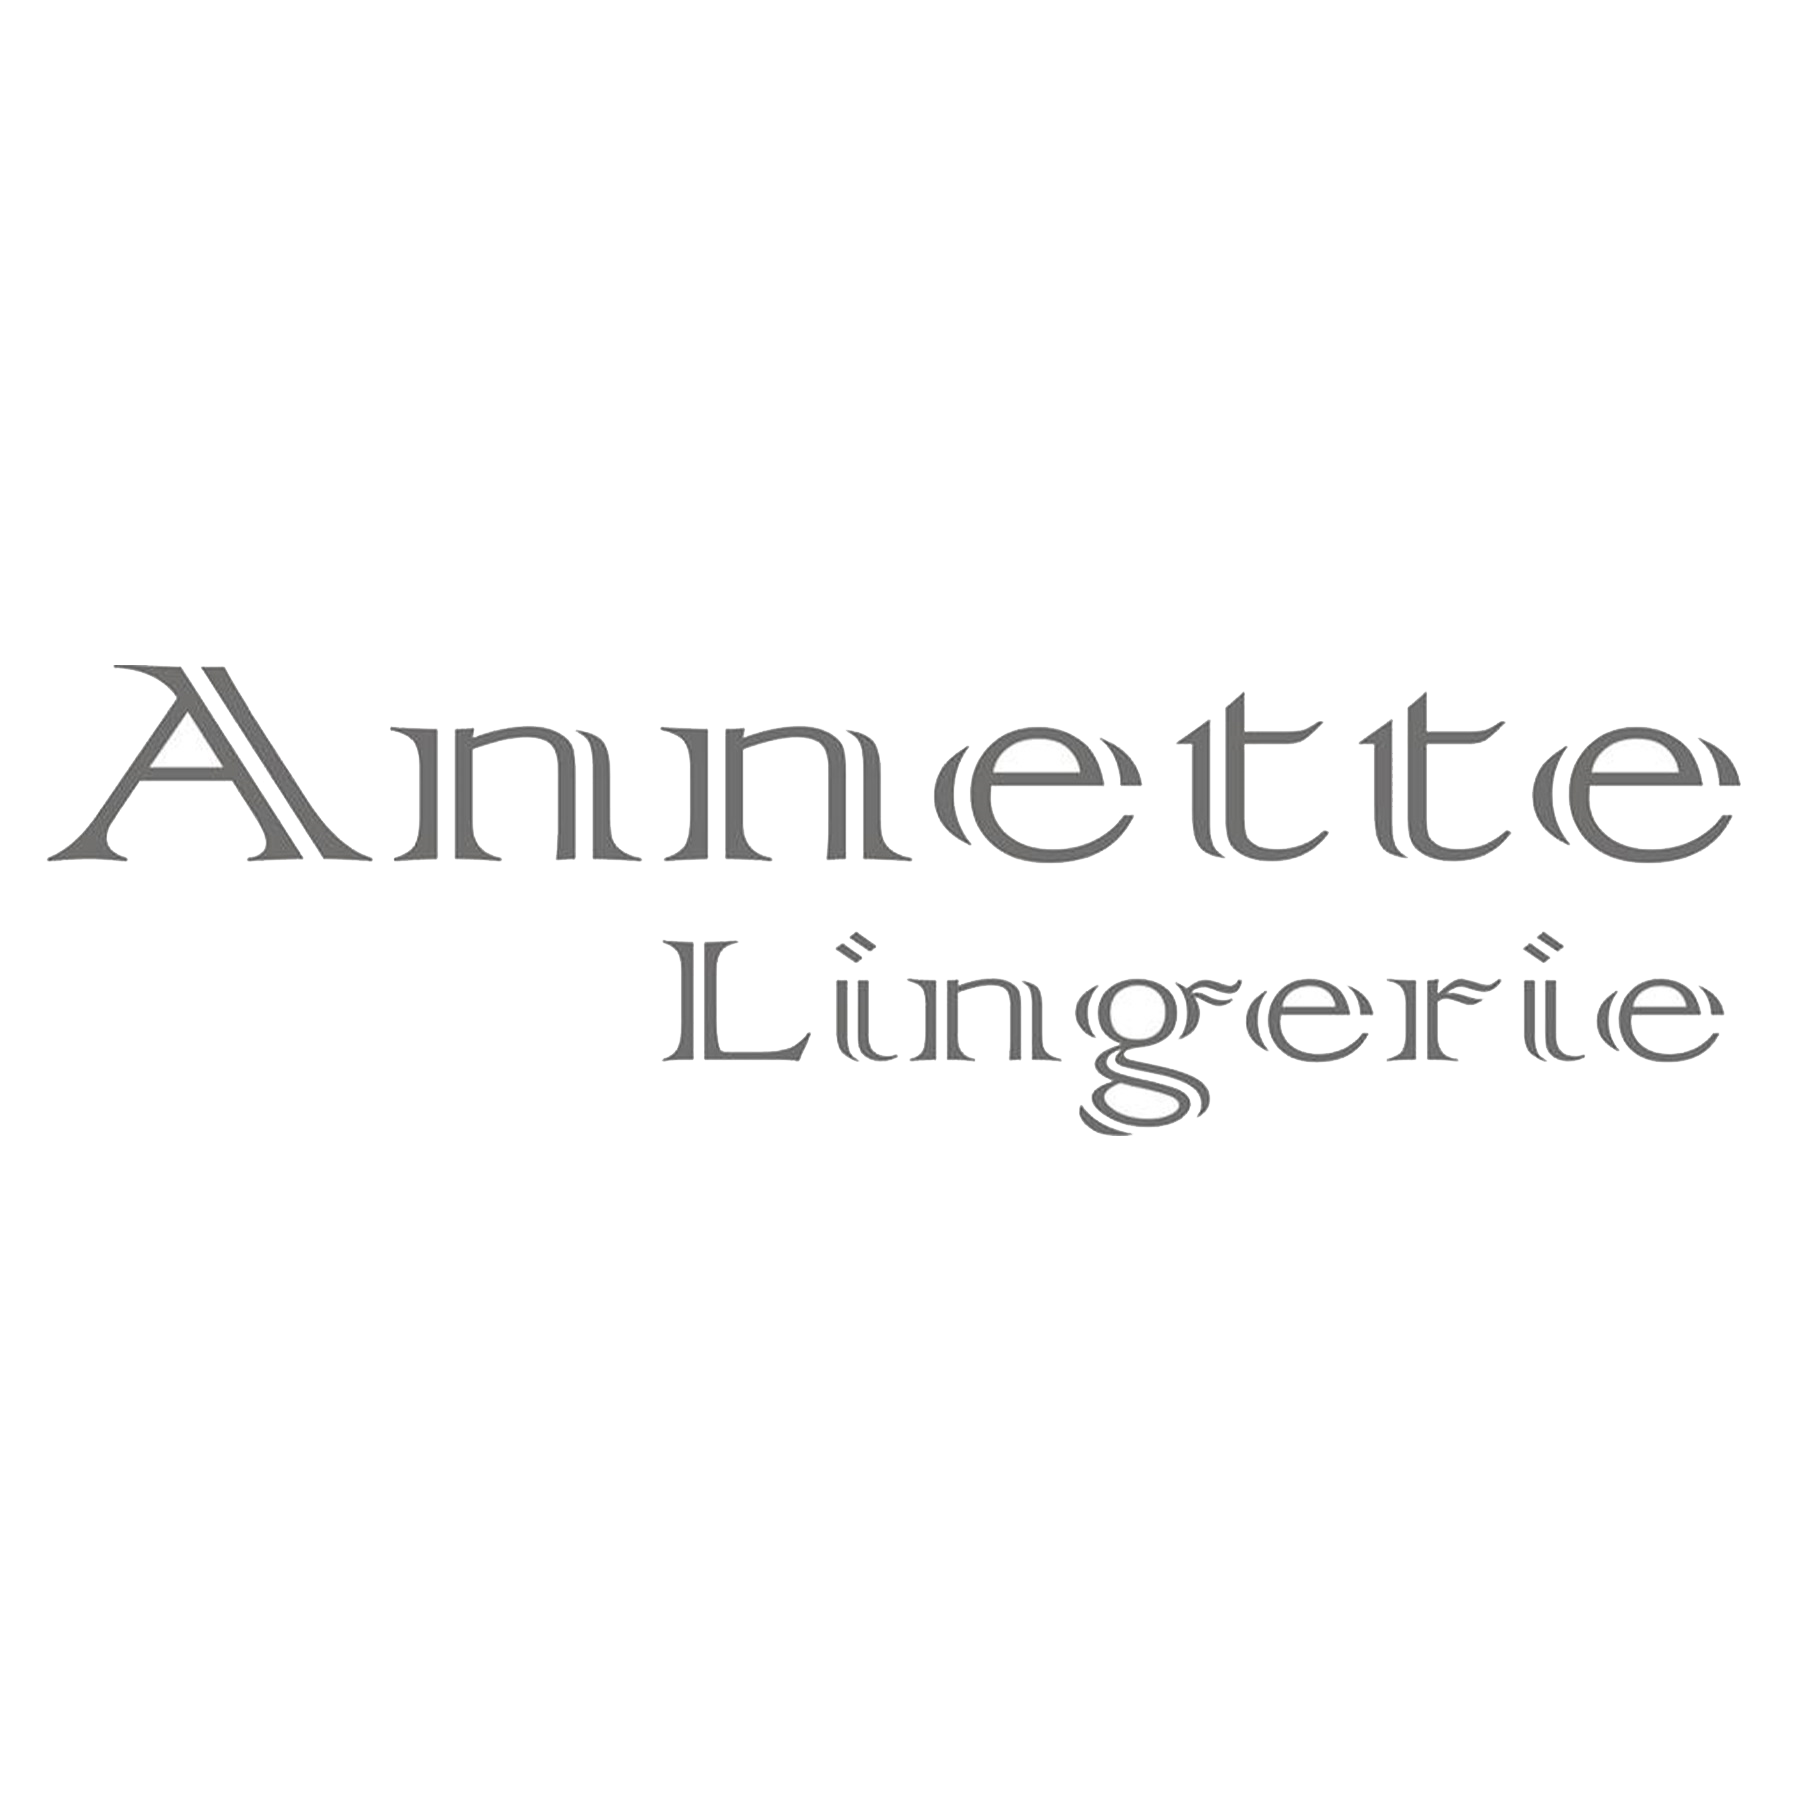 Annette Lingerie